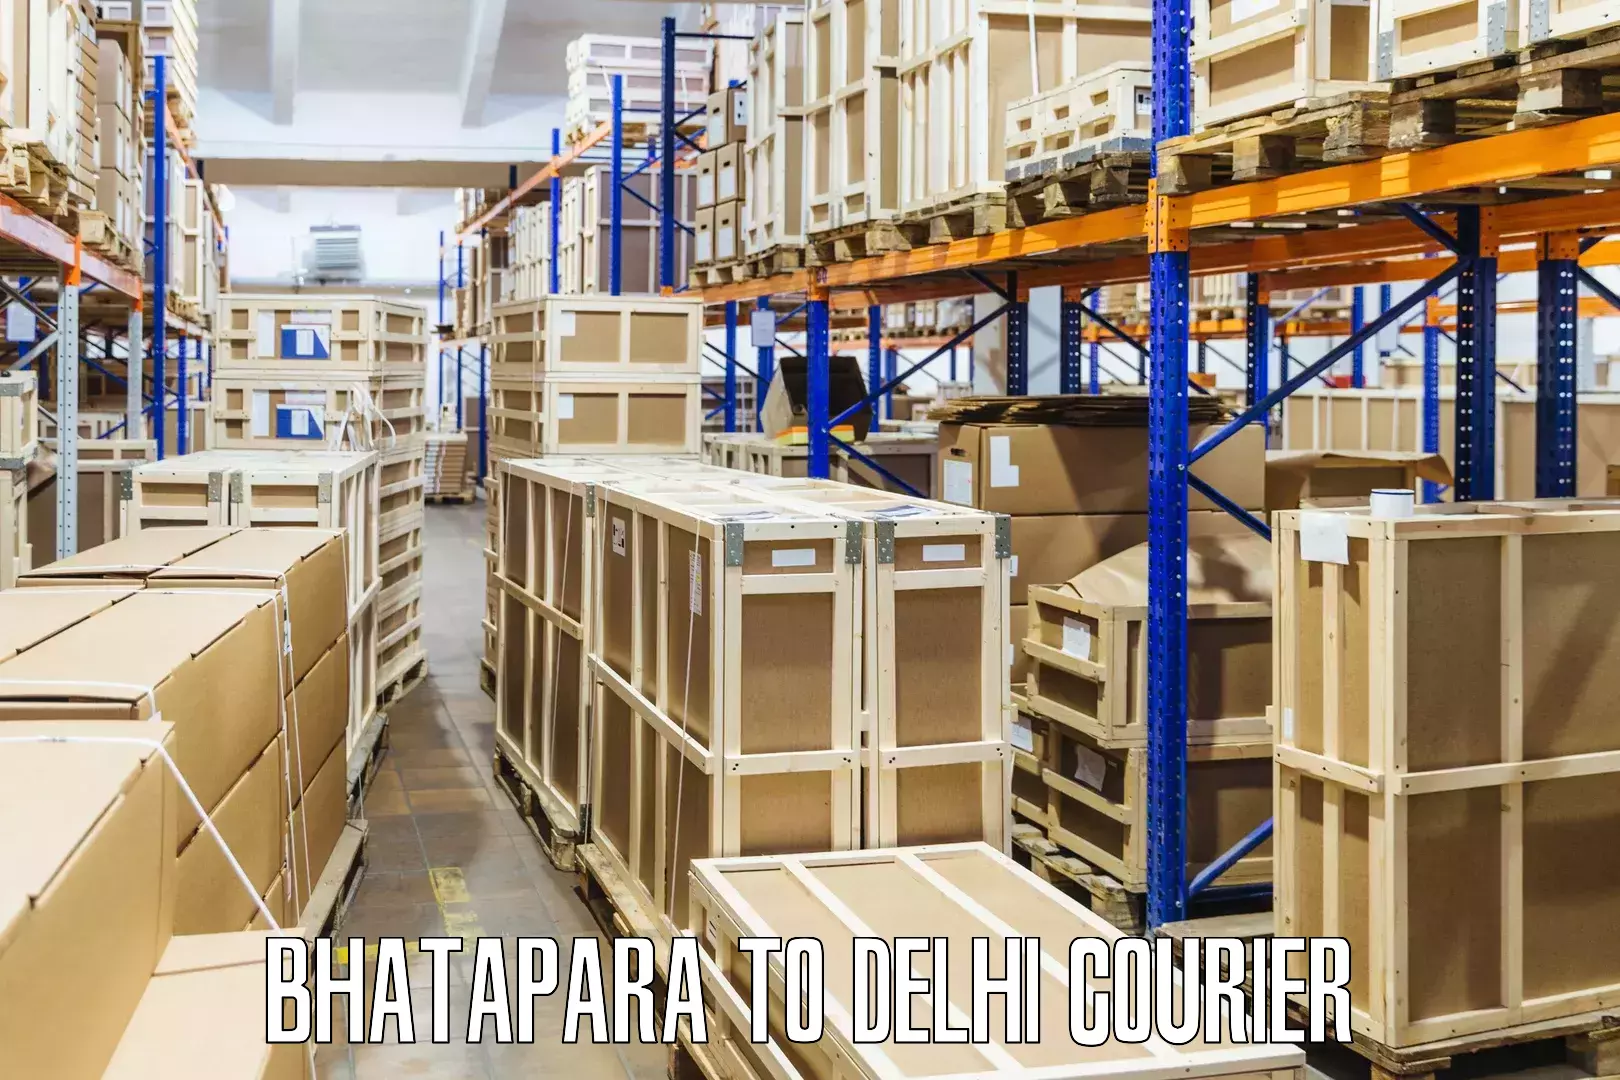 Reliable courier service Bhatapara to Jamia Millia Islamia New Delhi